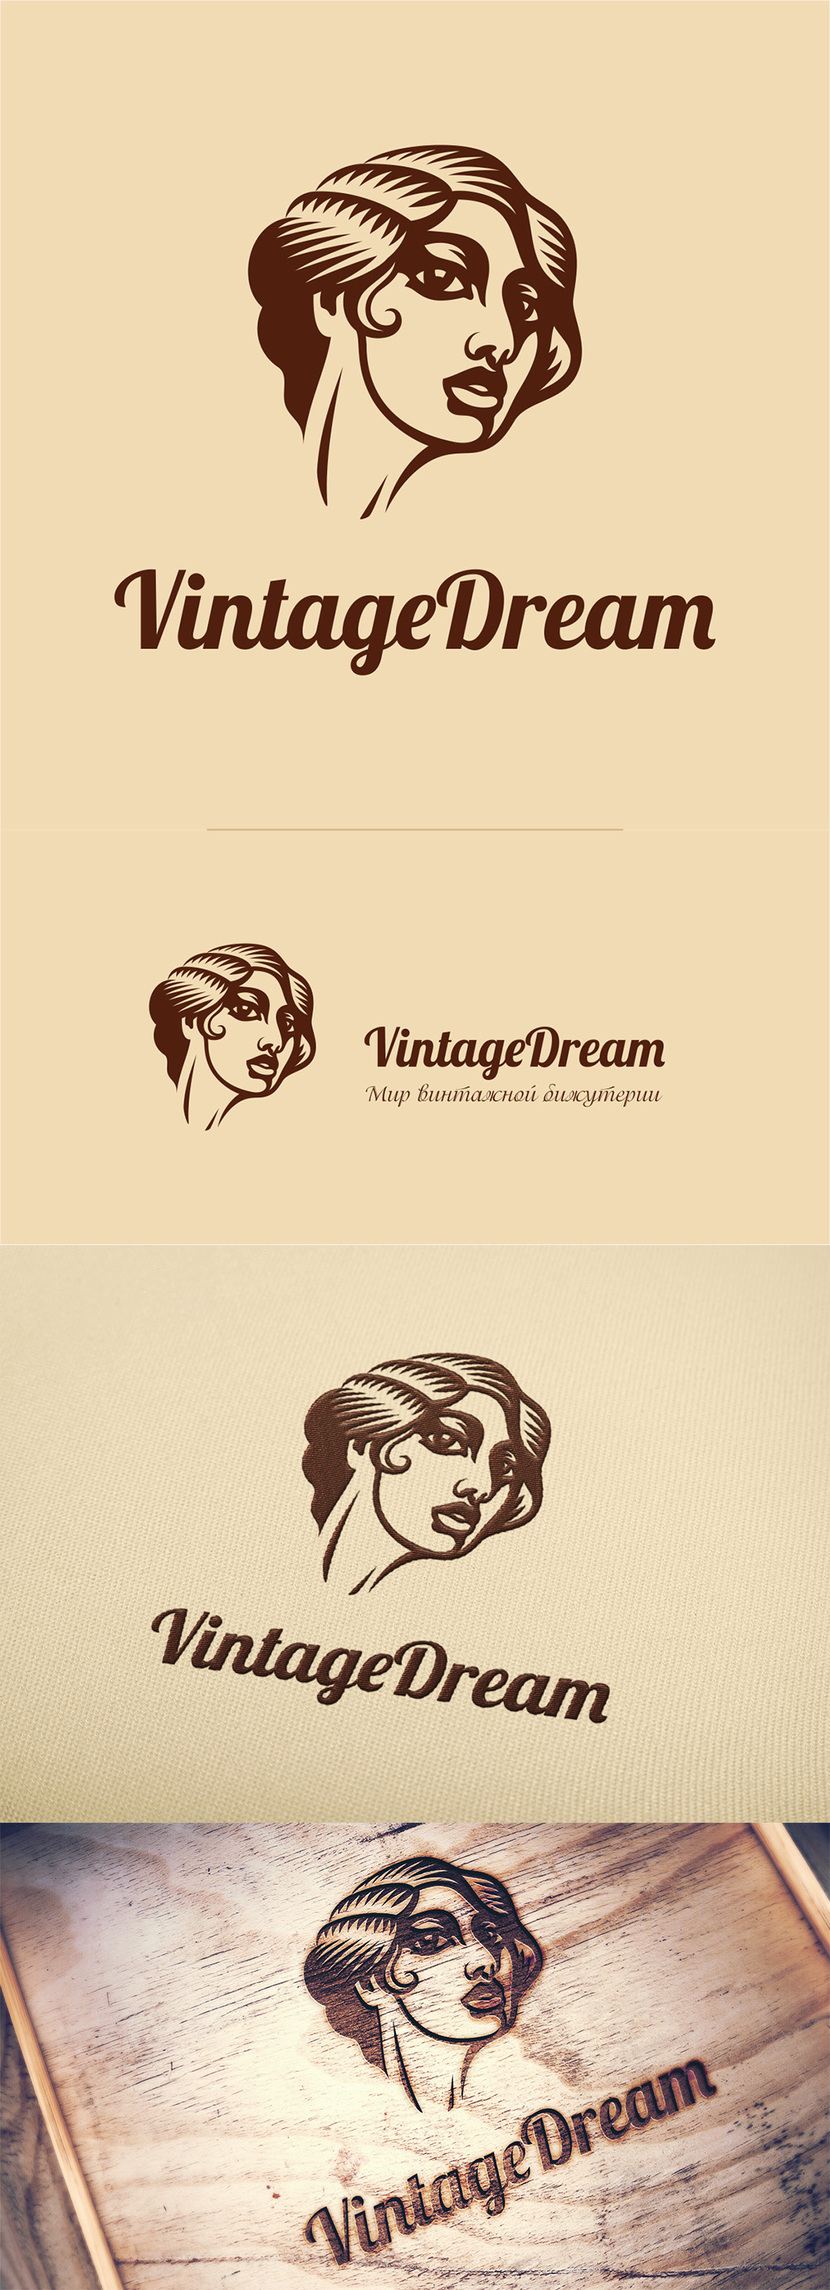 + Корректировки) - Логотип для сайта винтажной бижутерии, одежды, аксессуаров Vintagedream.ru